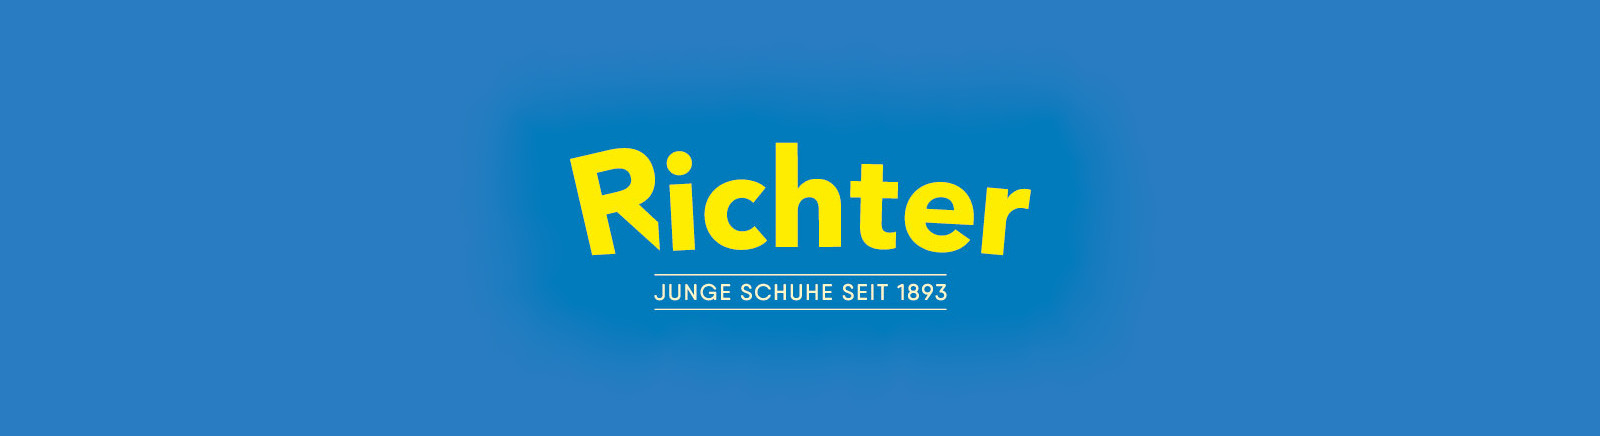 Juppen: Richter Klett Schuhe online shoppen